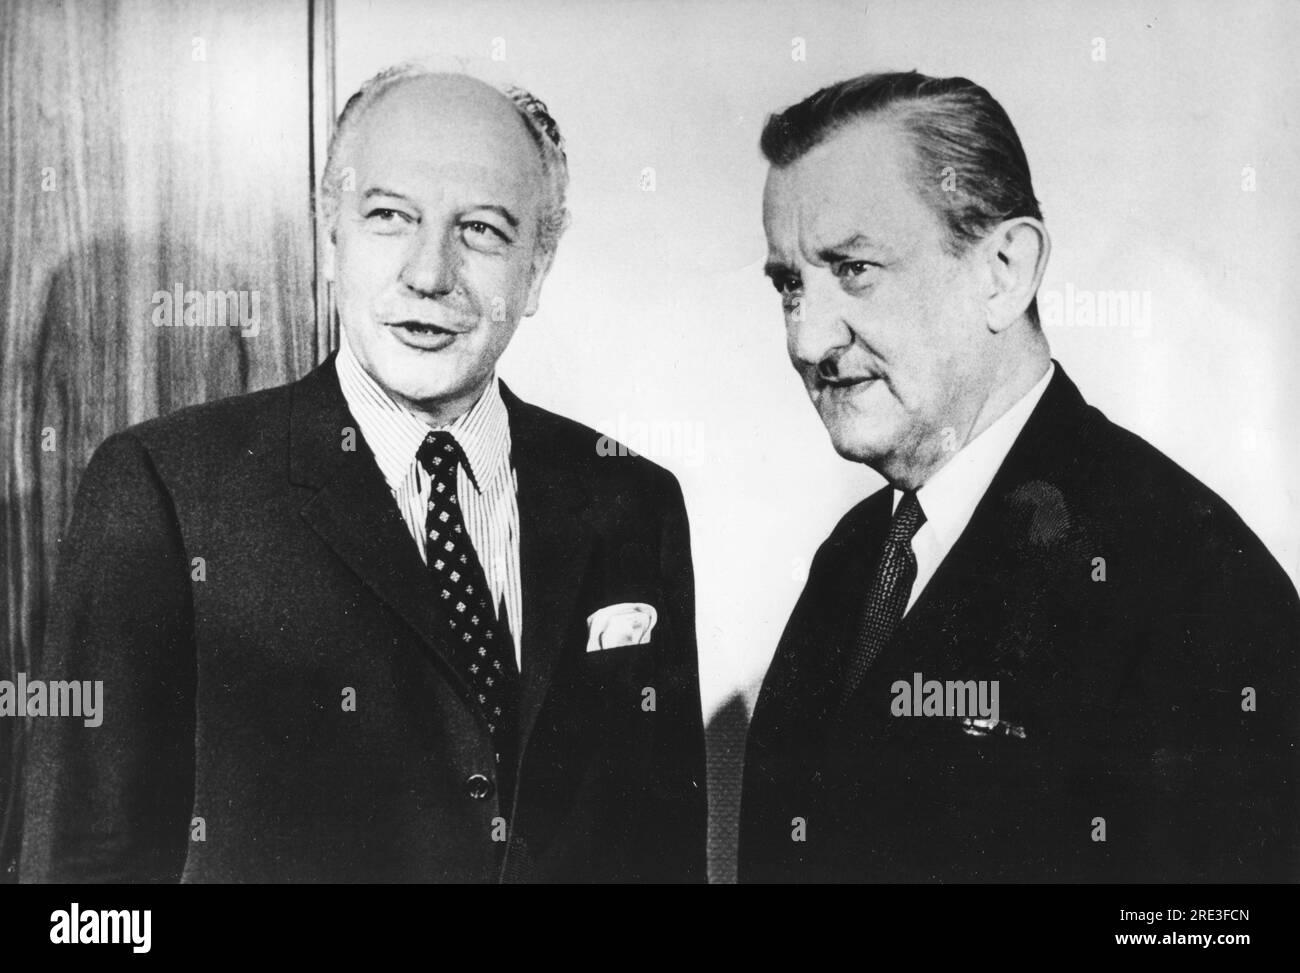 Winiewicz, Jozef, 6.6.1905 - 23.3,1985, politicien polonais (PZPR), vice-ministre des Affaires étrangères 1956 - 1972, INFORMATION-AUTORISATION-DROITS-SUPPLÉMENTAIRES-NON-DISPONIBLE Banque D'Images